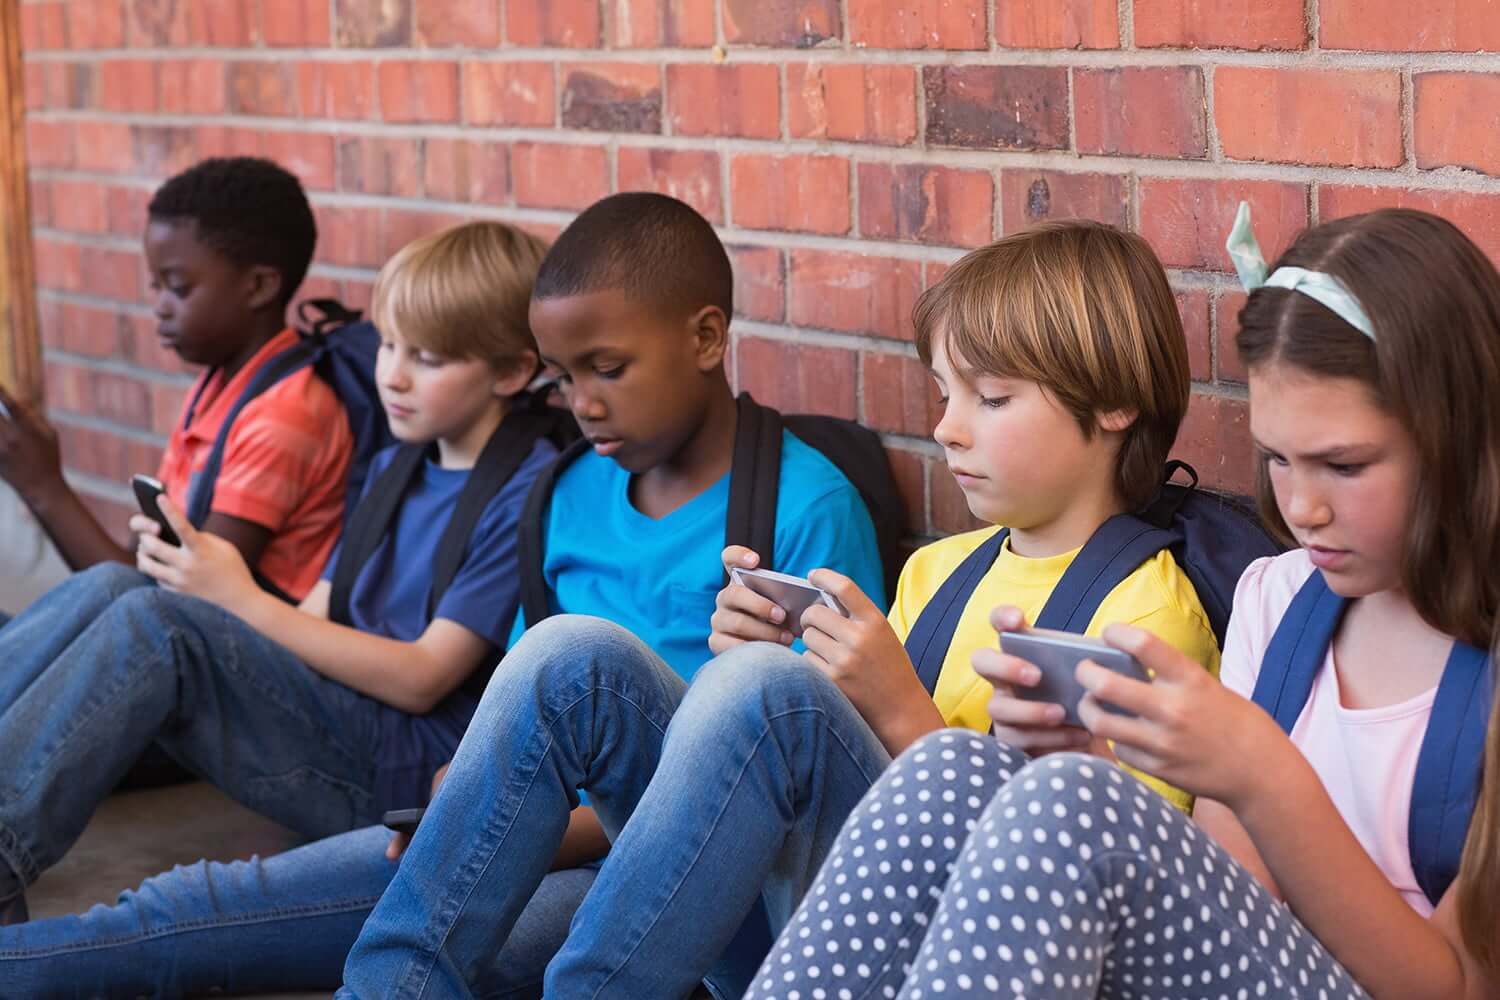 法国出台严格禁令 3-15岁学生在校禁用手机